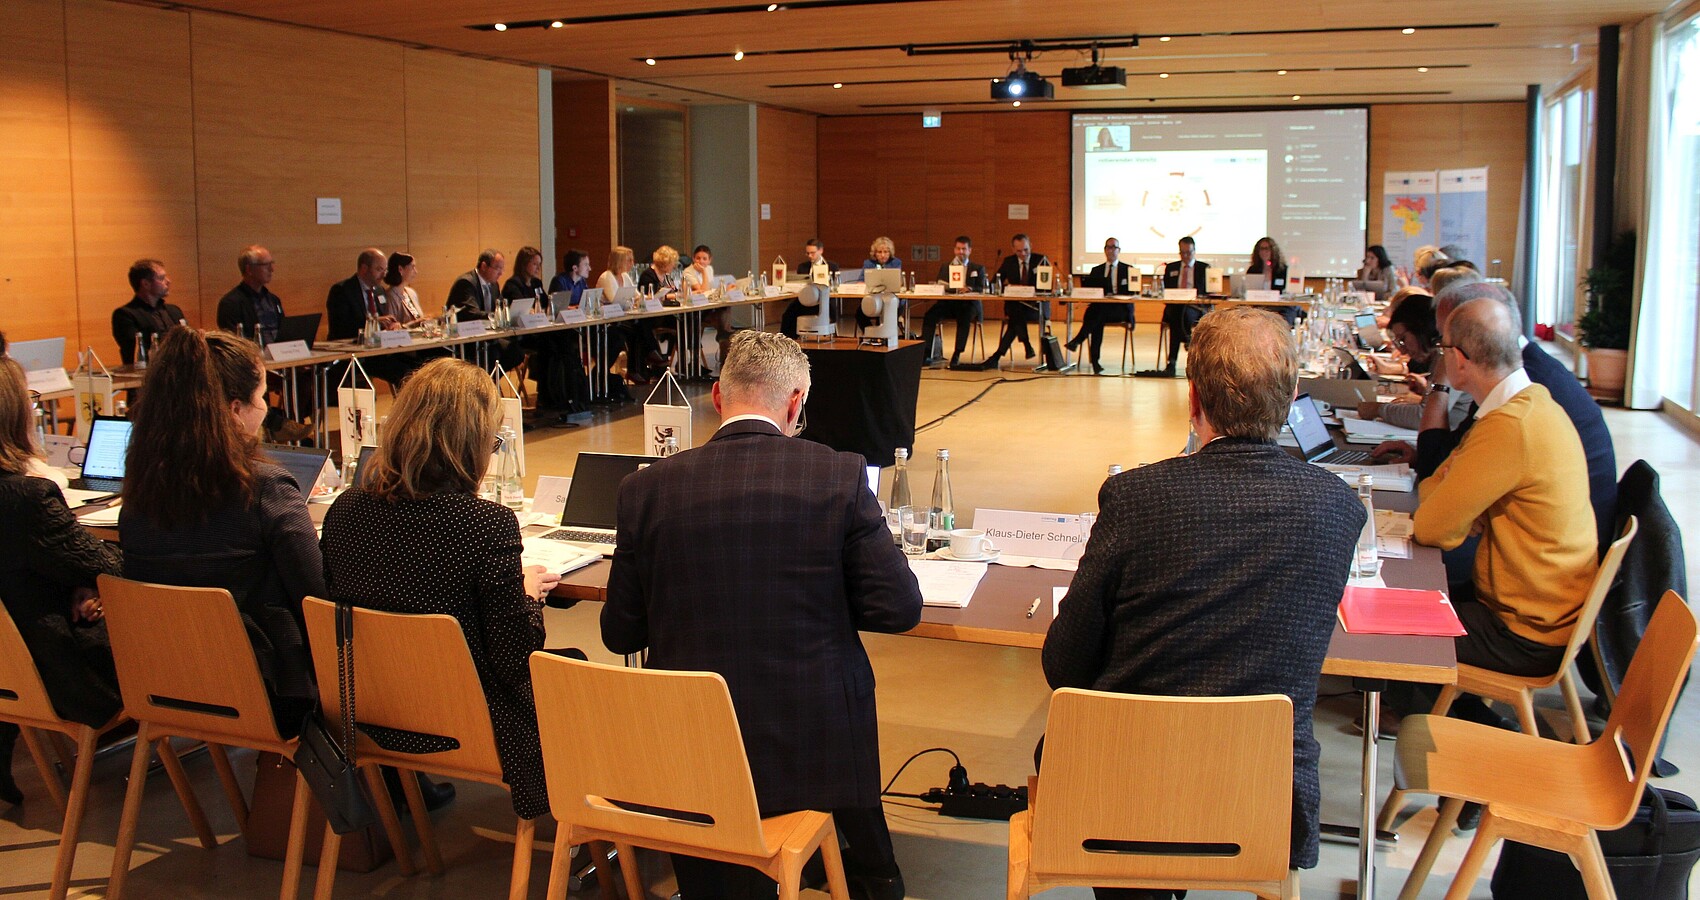 Das Bild zeigt die Teilnehmer der Konstituierenden Sitzung des Interreg-Begleitausschusses in einem Sitzungssaal an Tischen